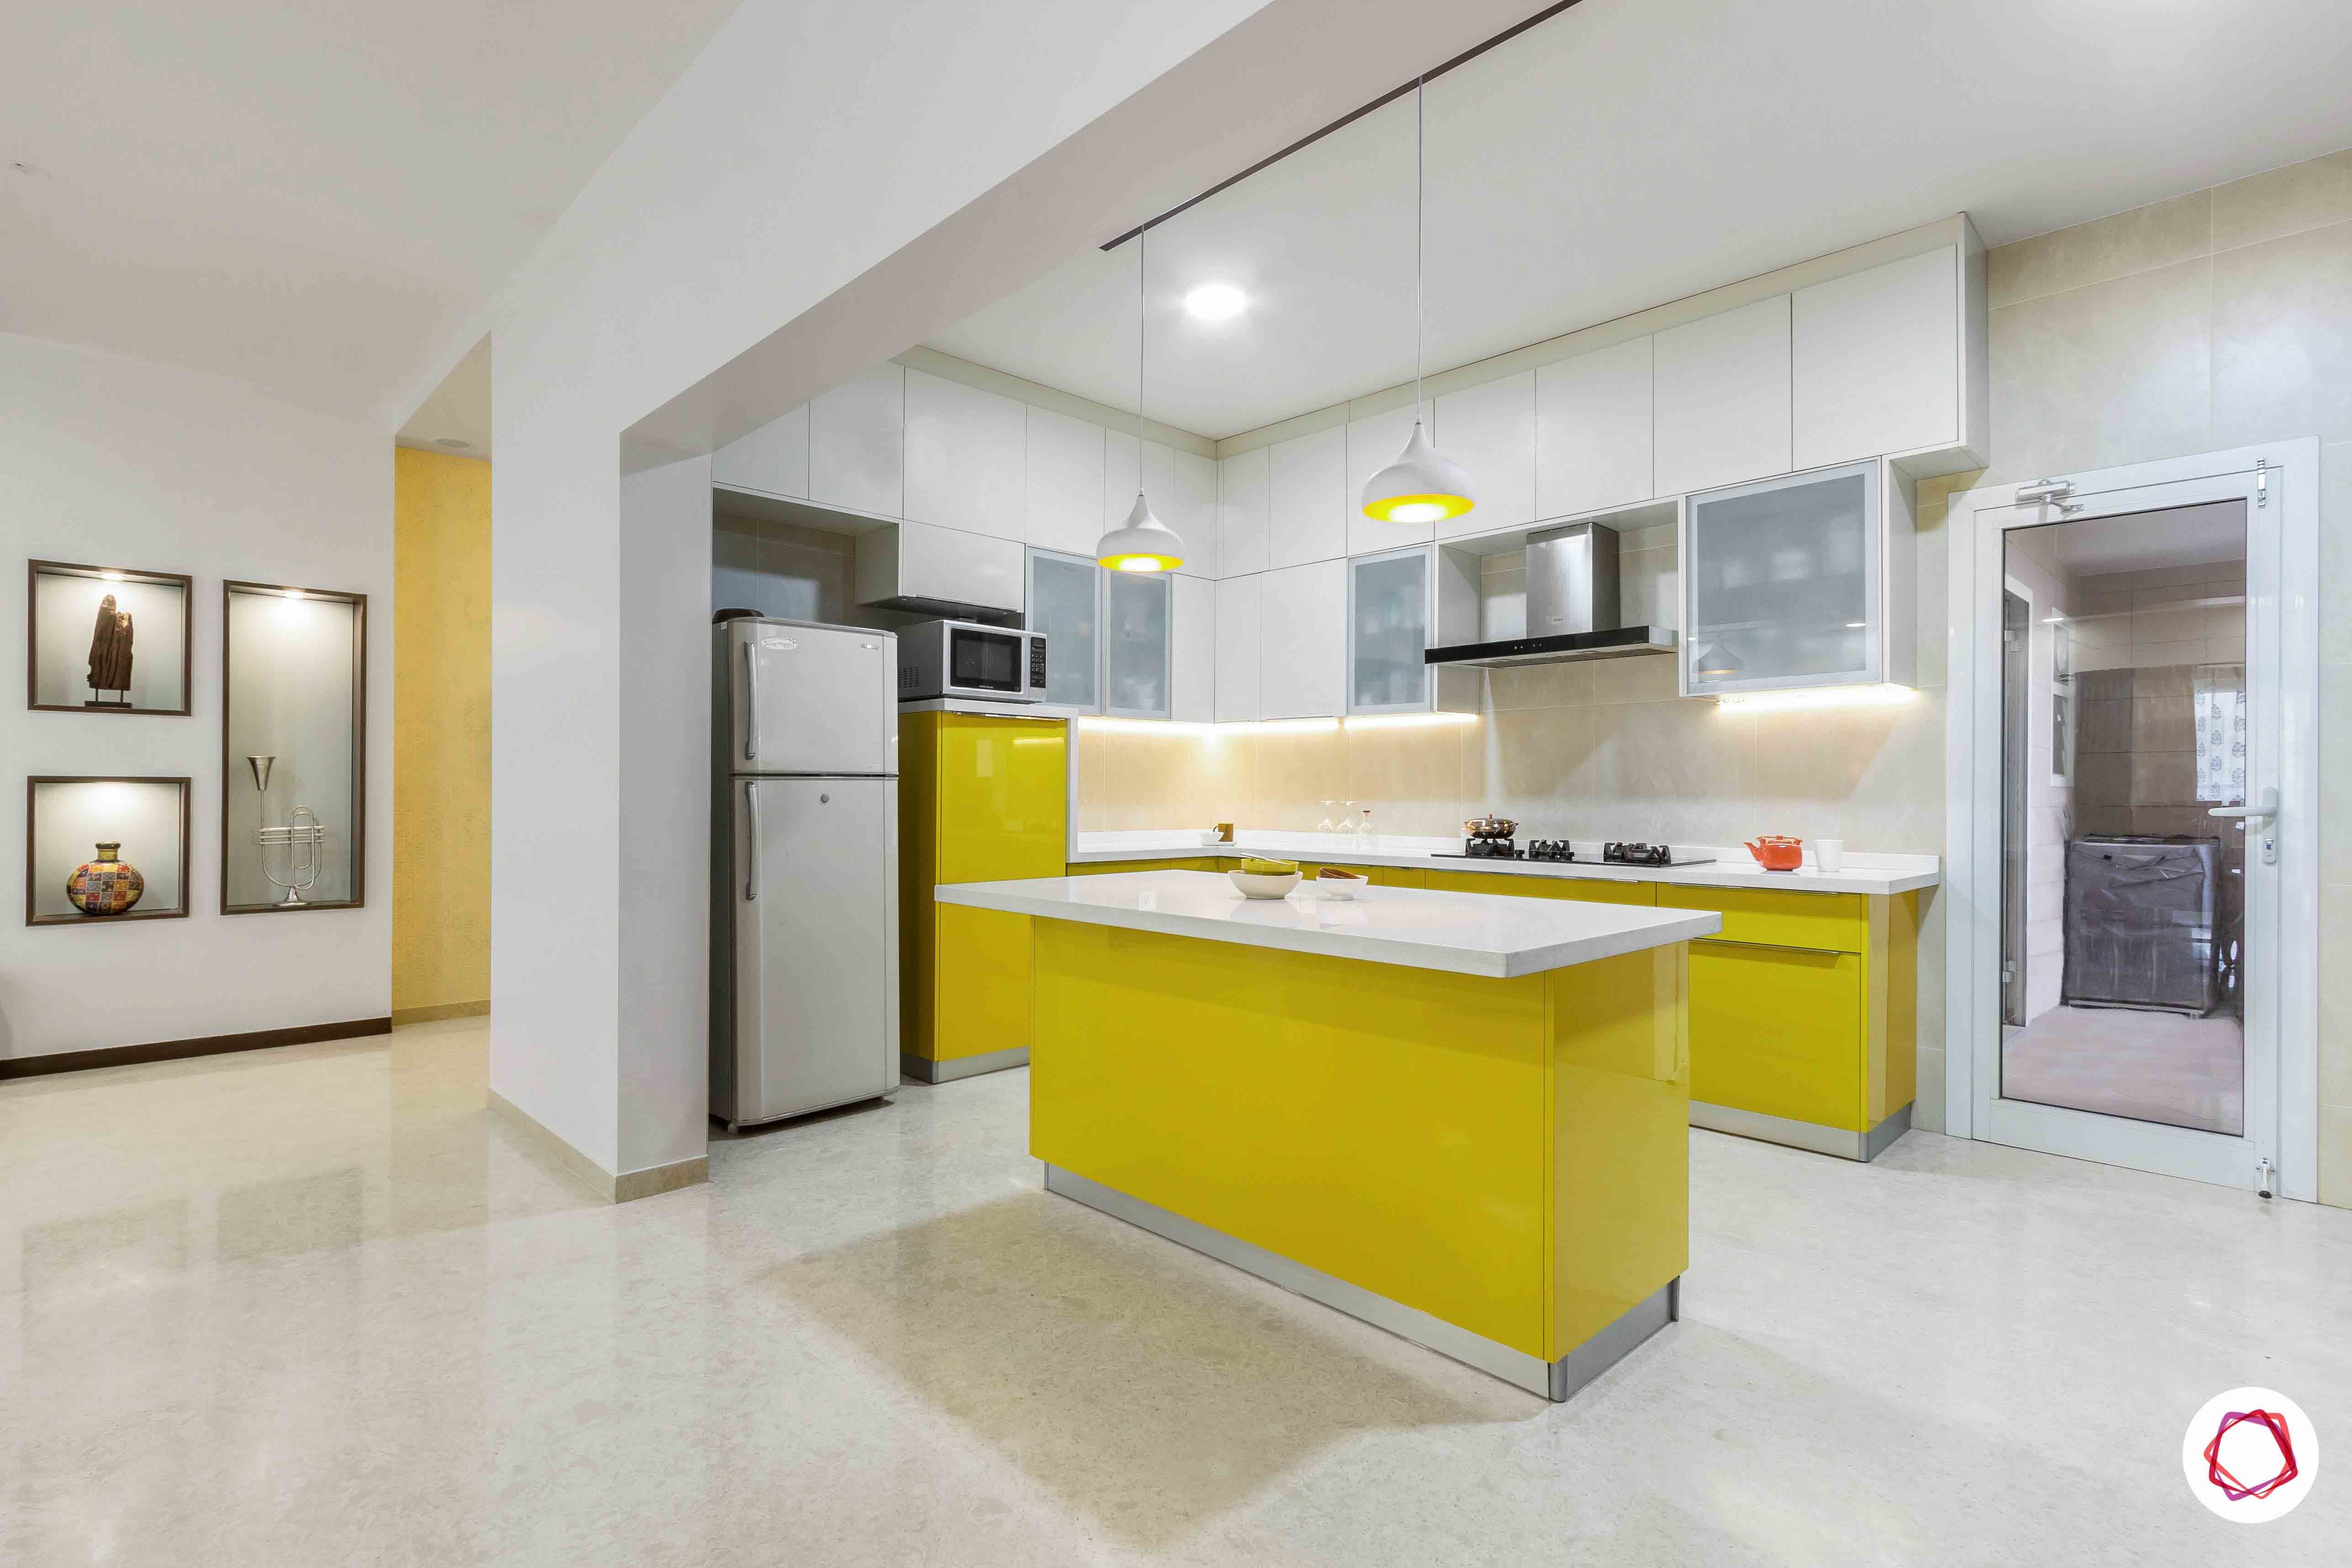 sobha forest view-modular kitchen design-open kitchen-breakfast counter-yellow kitchen cabinets